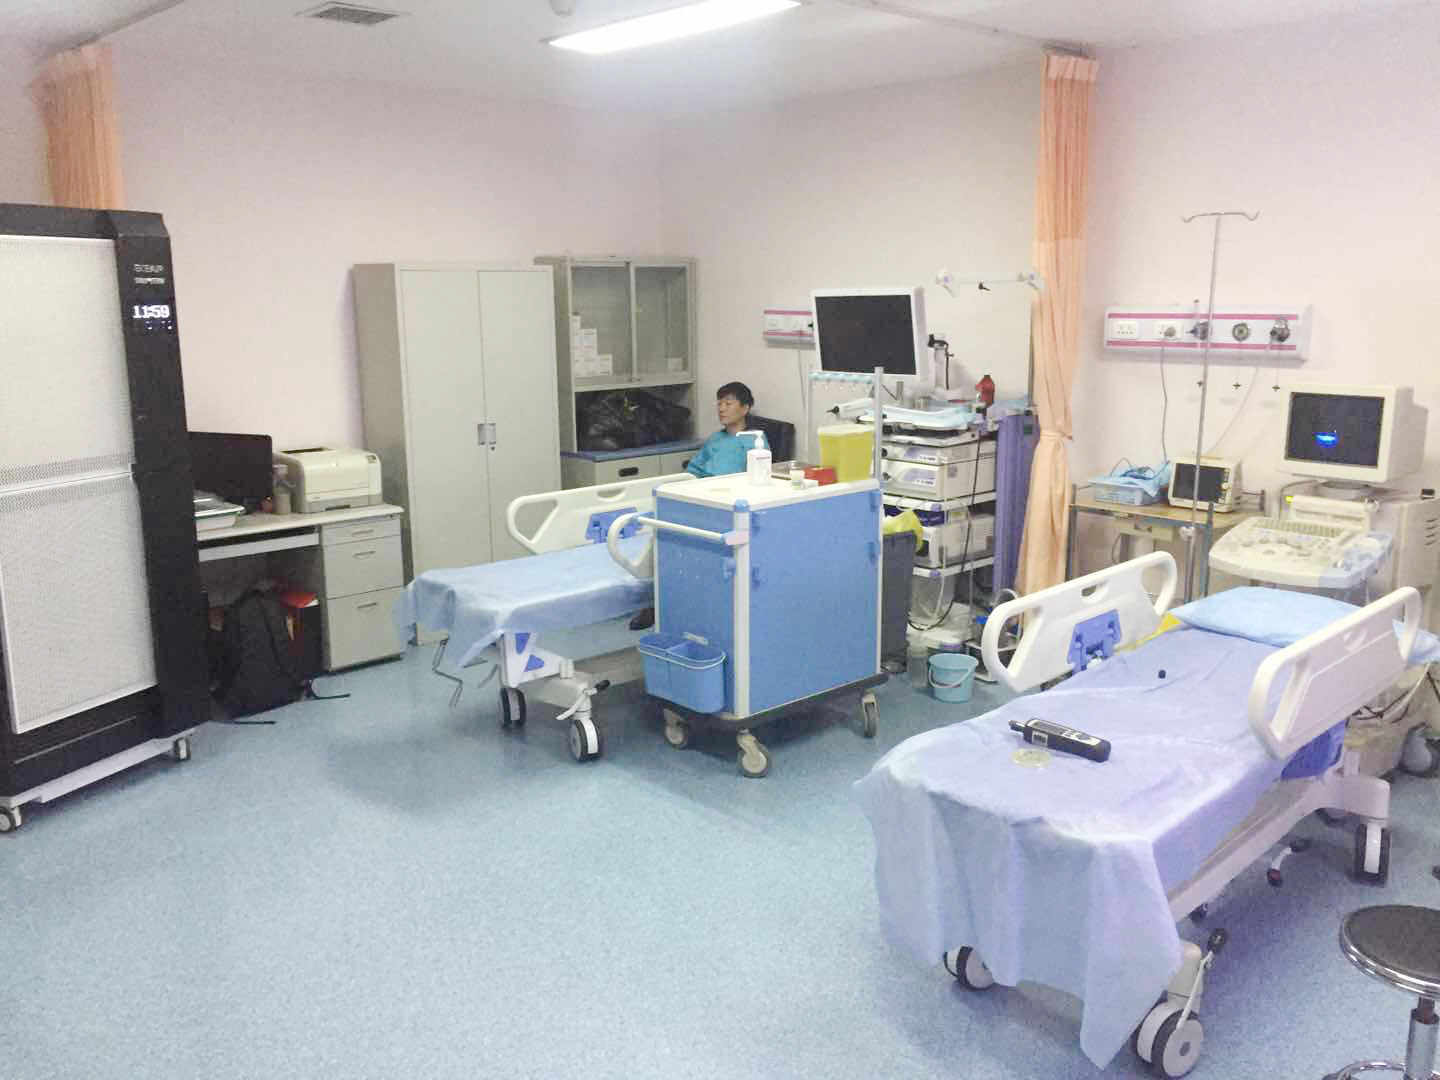 أحدث حالة شركة حول معهد ومستشفى السرطان بجامعة تيانجين الطبية